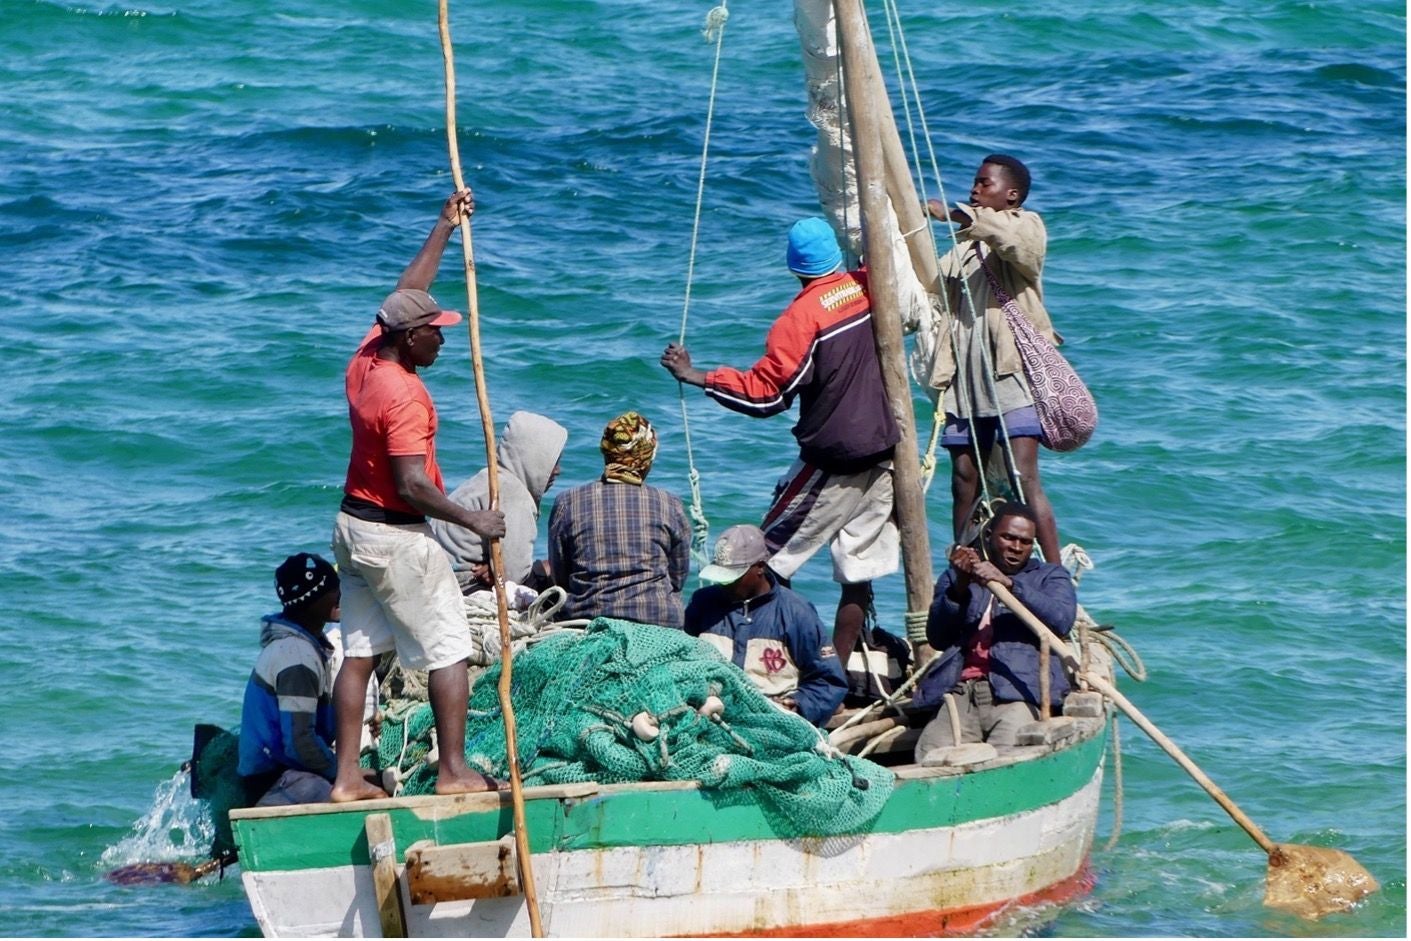 fishermen pulling in nets on a boat